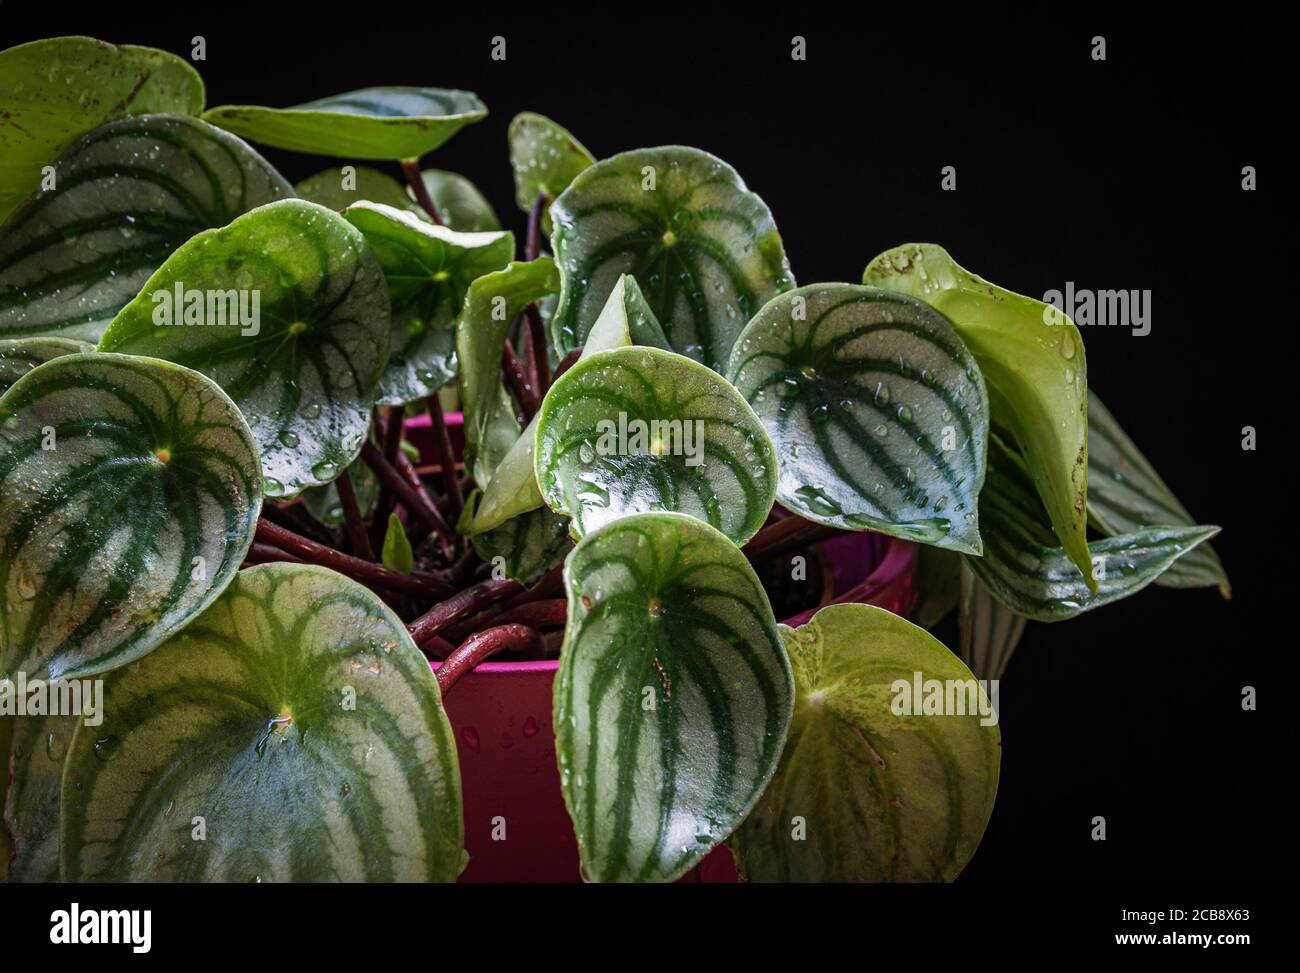 Watermelon peperomia (peperomia argyreia) plant with attractive stripy pattern on dark background. Stock Photo